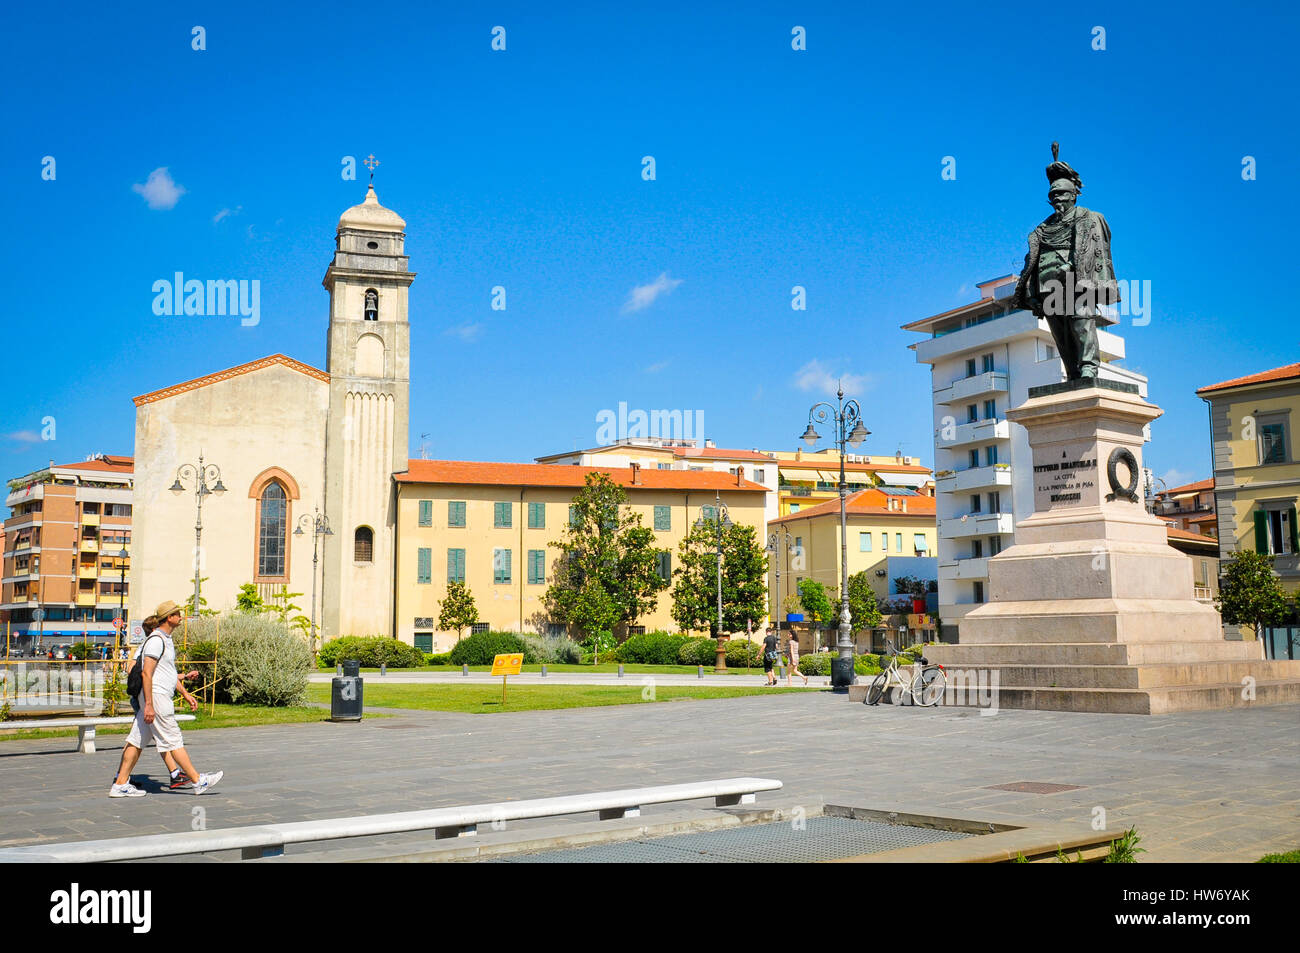 Pisa, Italia - 25 Giugno 2016: i turisti di visitare il centro storico di Pisa, Italia rinomato per la sua torre pendente. Foto Stock